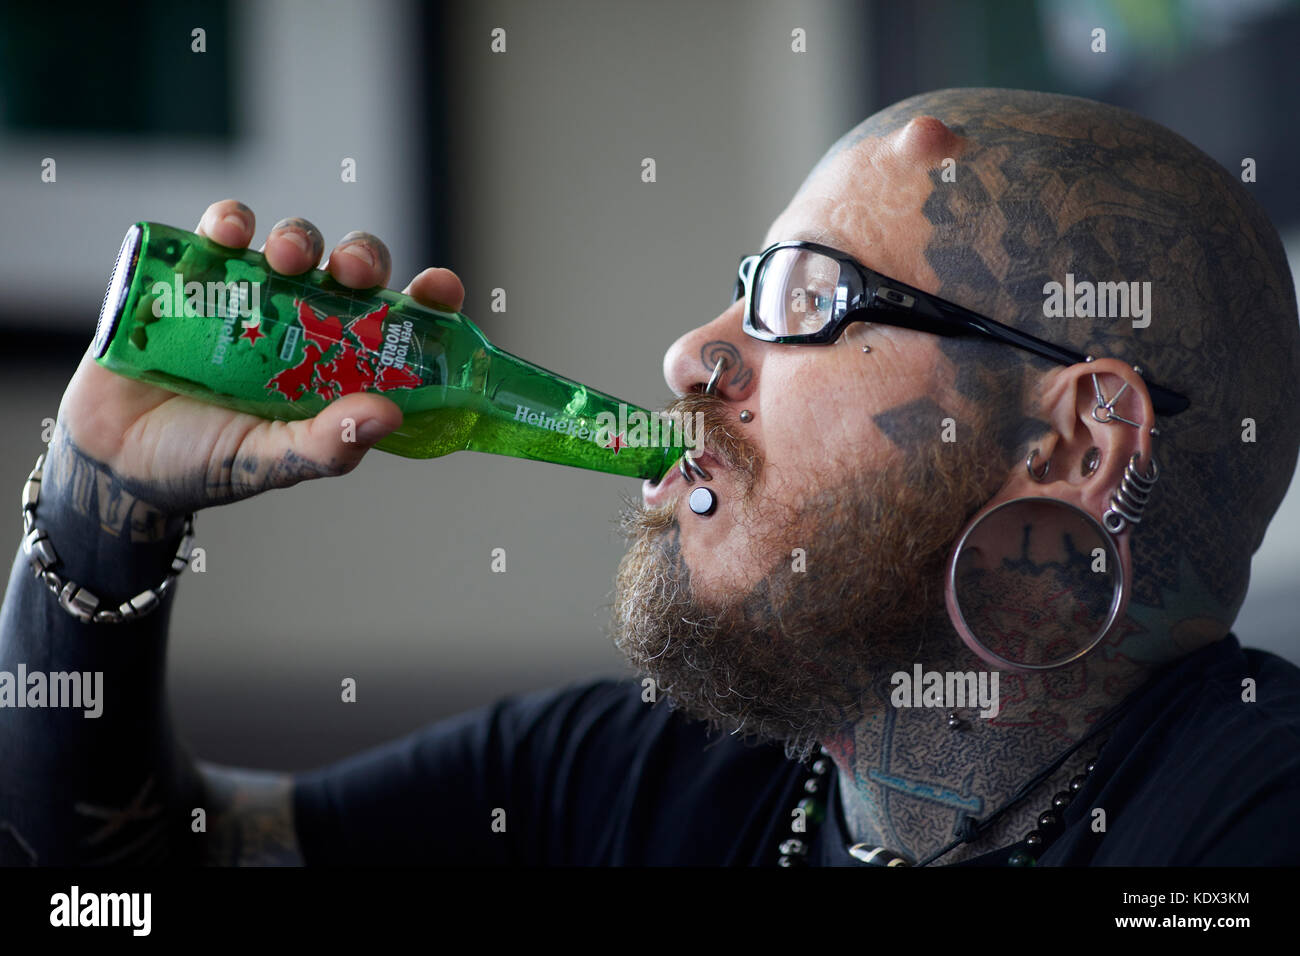 Der menschliche Bibliothek - Körper Modifikation Heineken Bier trinken Stockfoto